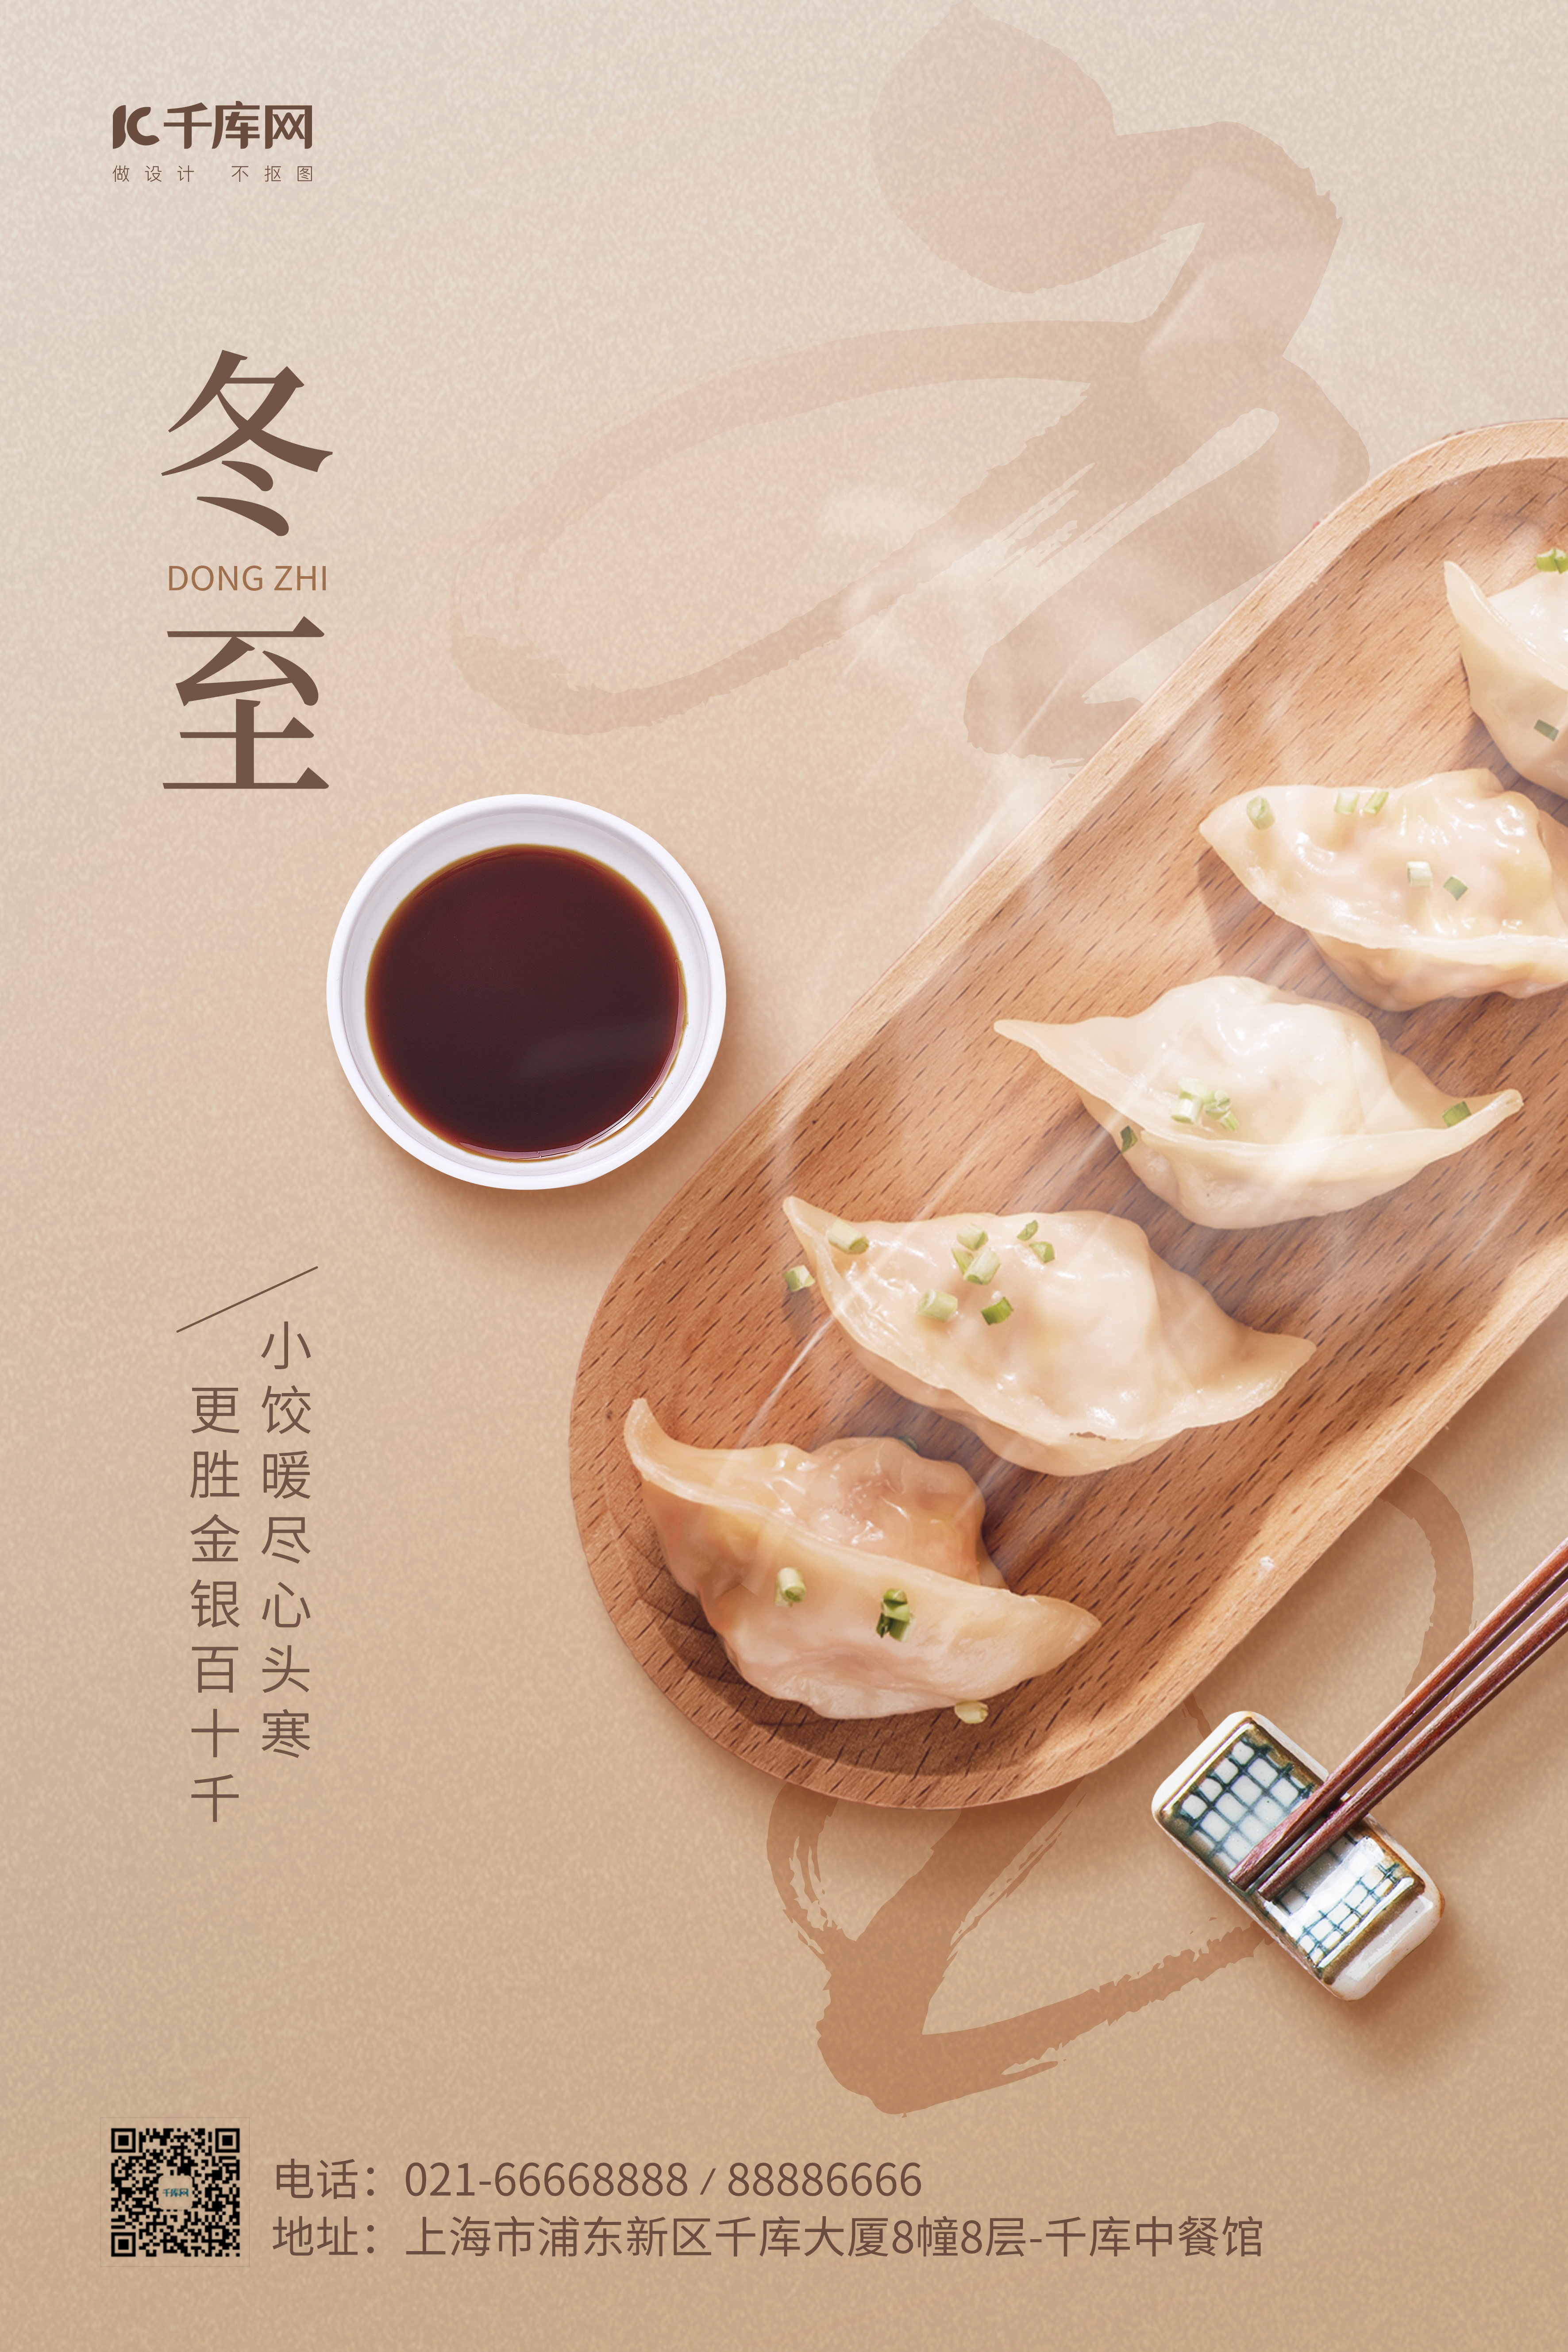 冬至节气美食饺子浅褐色简约海报图片